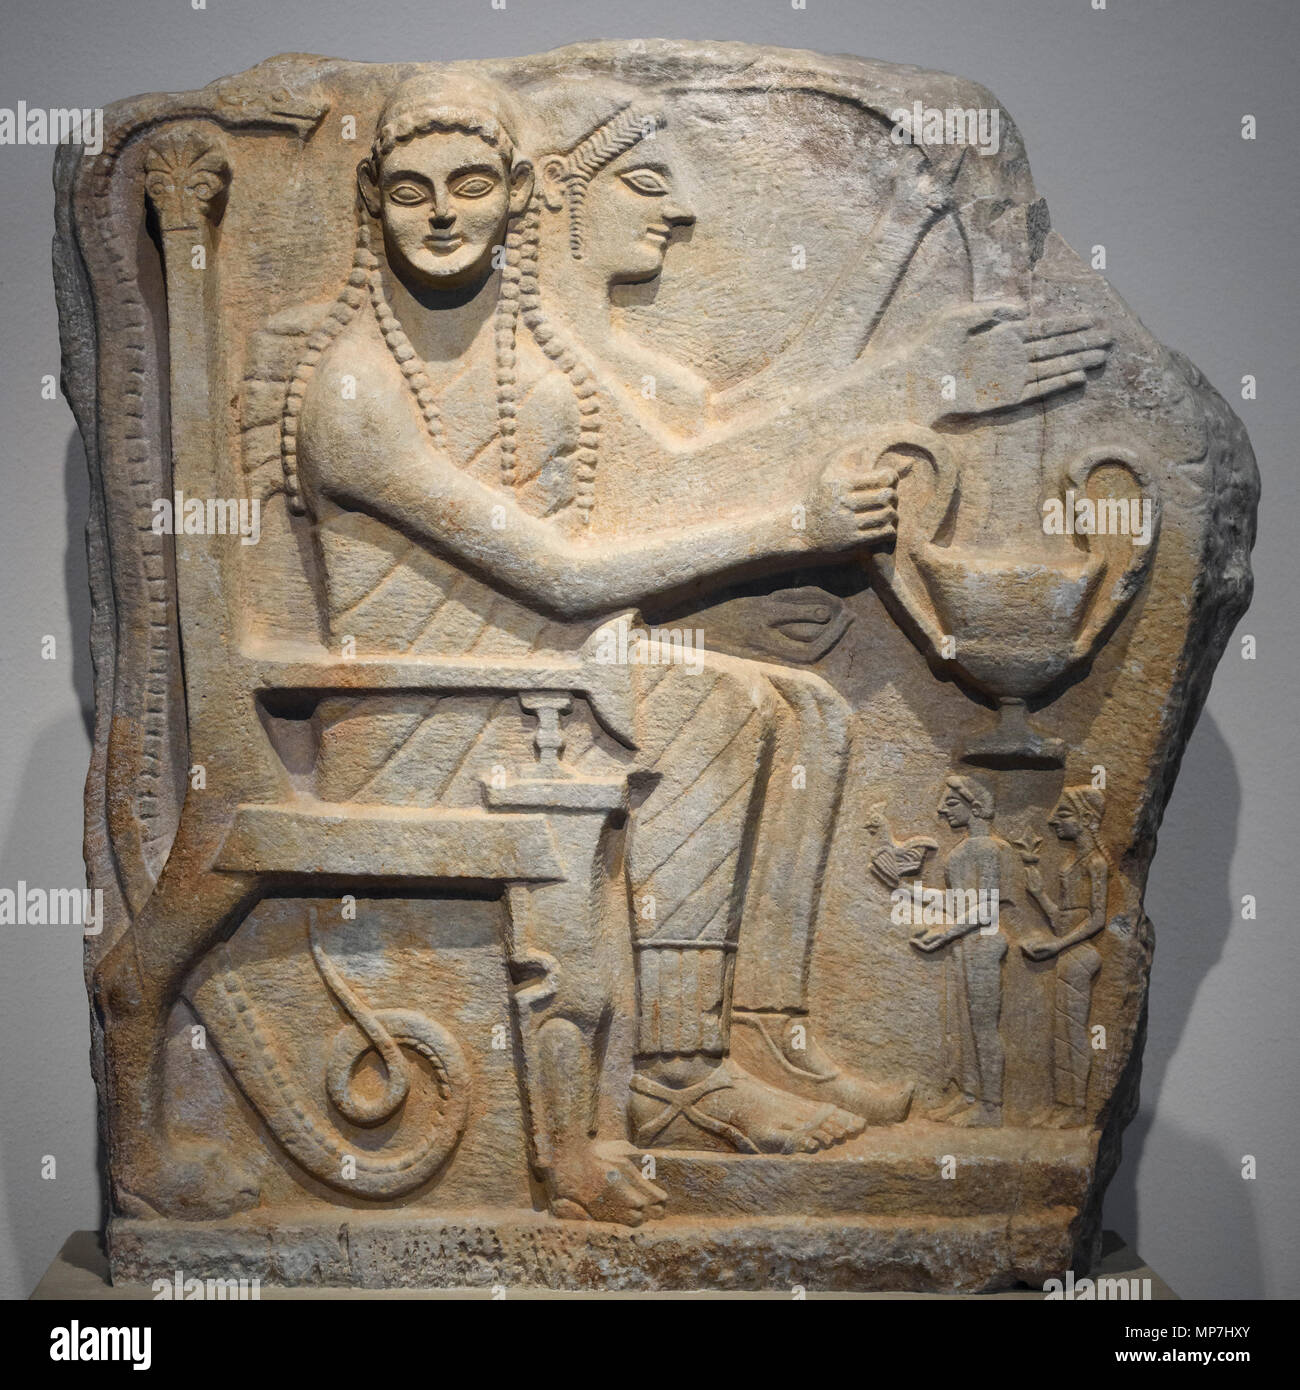 Berlín. Alemania. Héroe espartano socorro, estela con héroes y adoradores de Chrysapha / Sparta (Grecia), mármol, alrededor del 540 AC. Altes Museum. Coupl Foto de stock